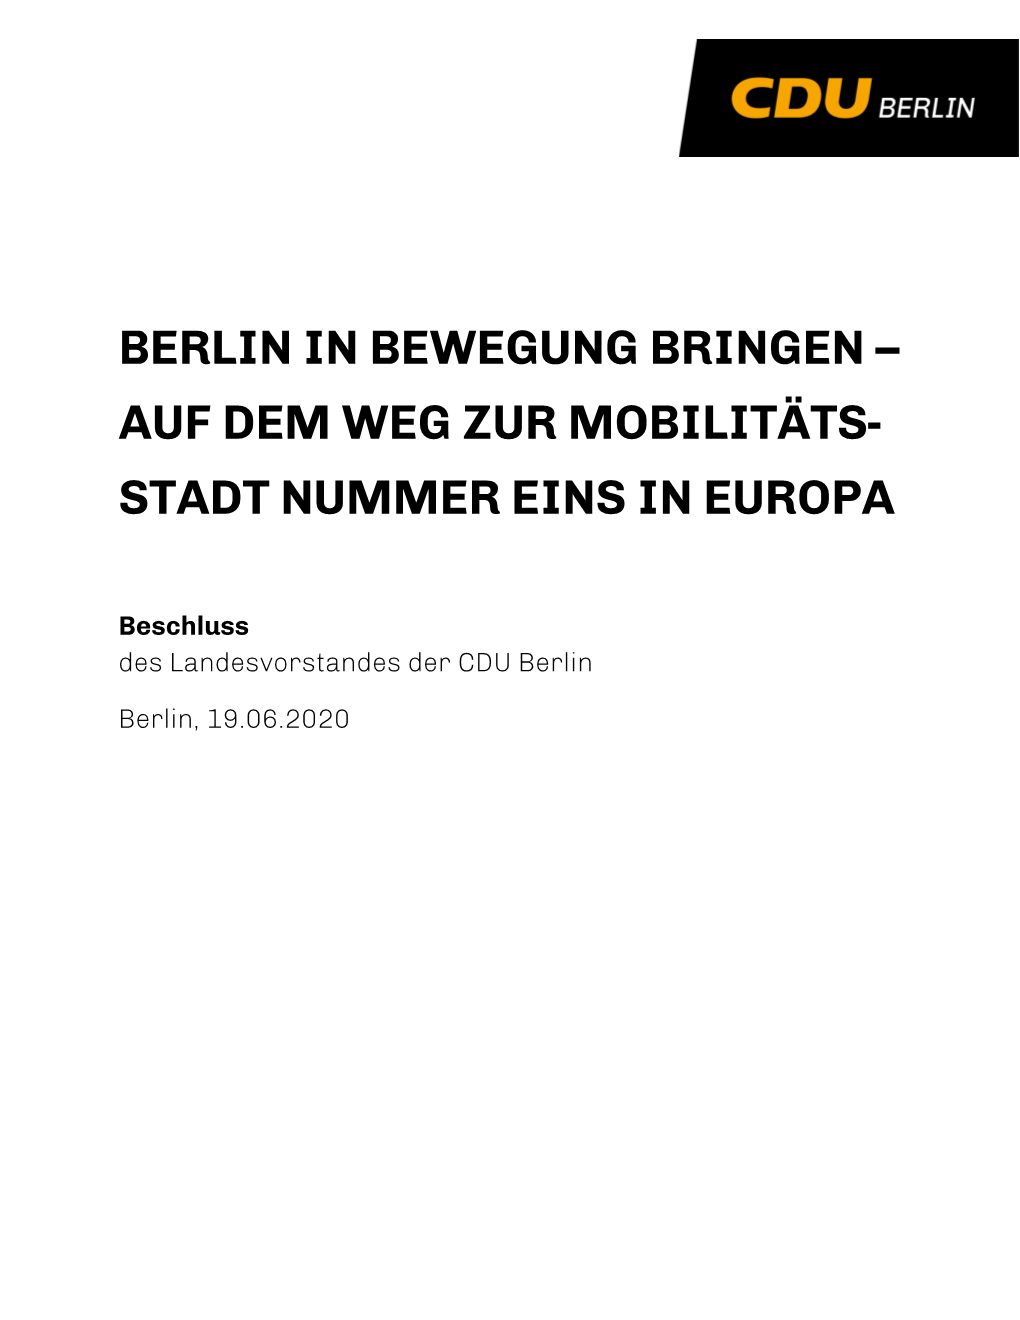 Verkehrskonzept Der Cdu Berlin 1 Inhaltsverzeichnis